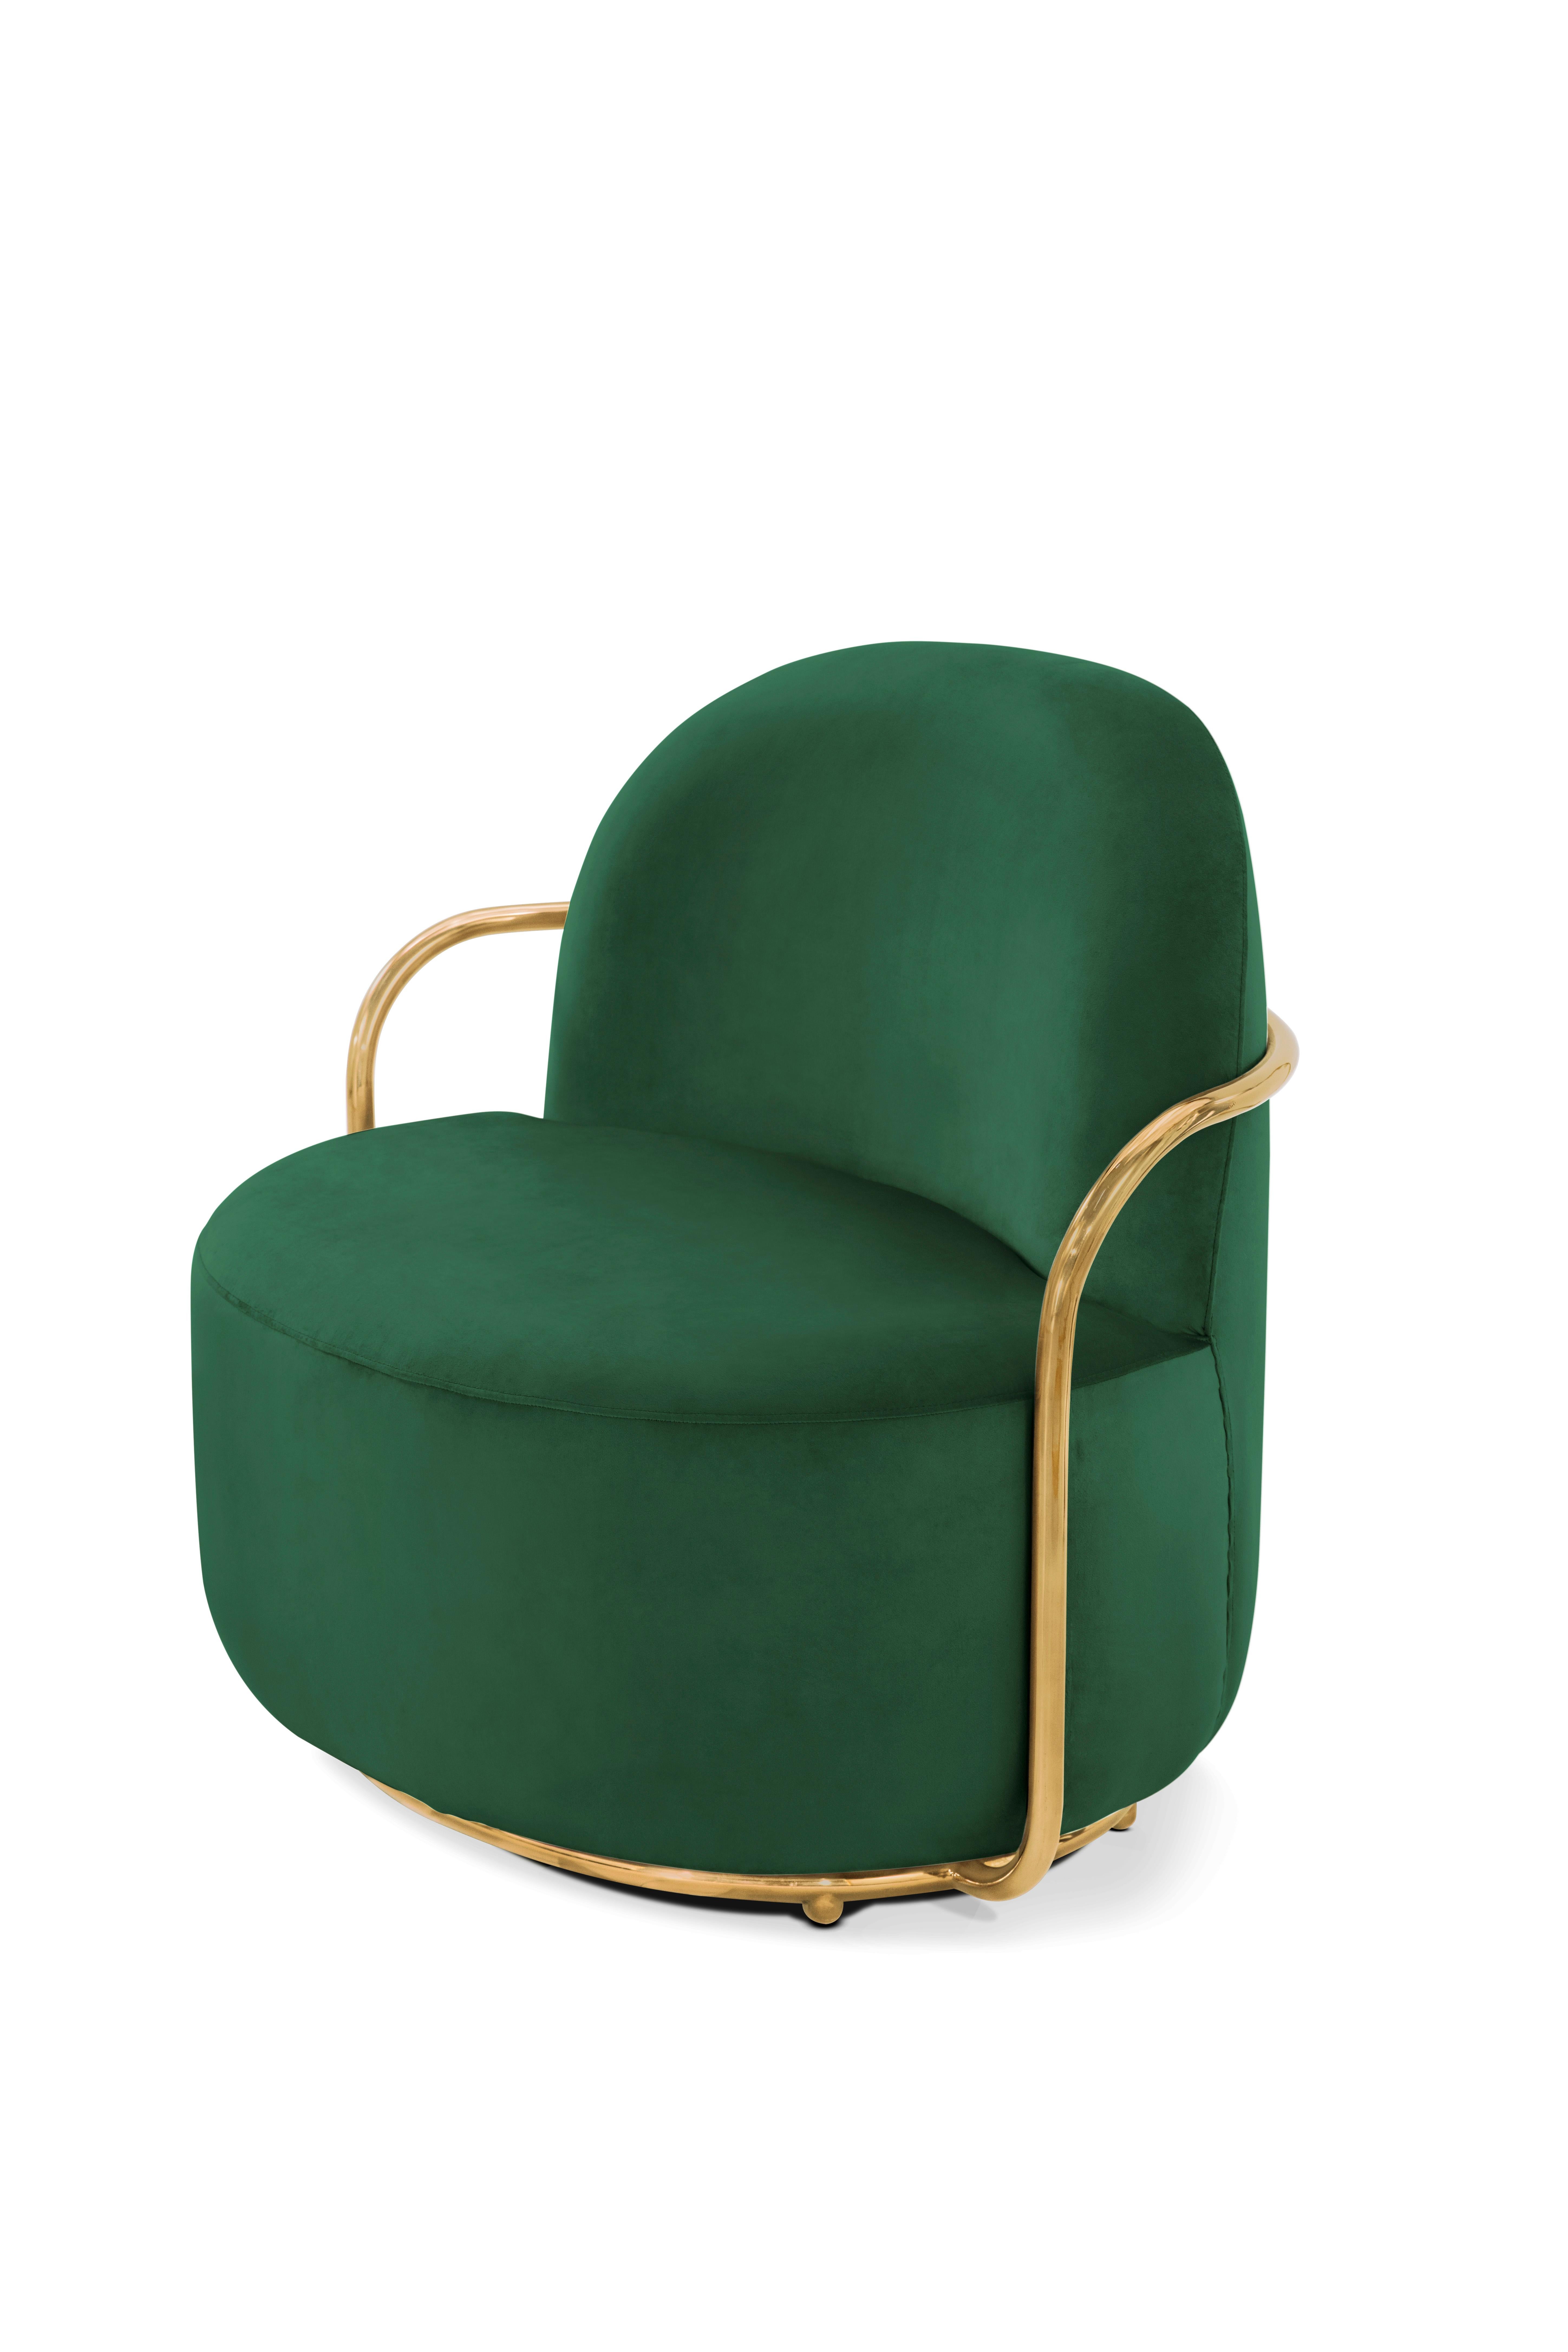 green plush chair